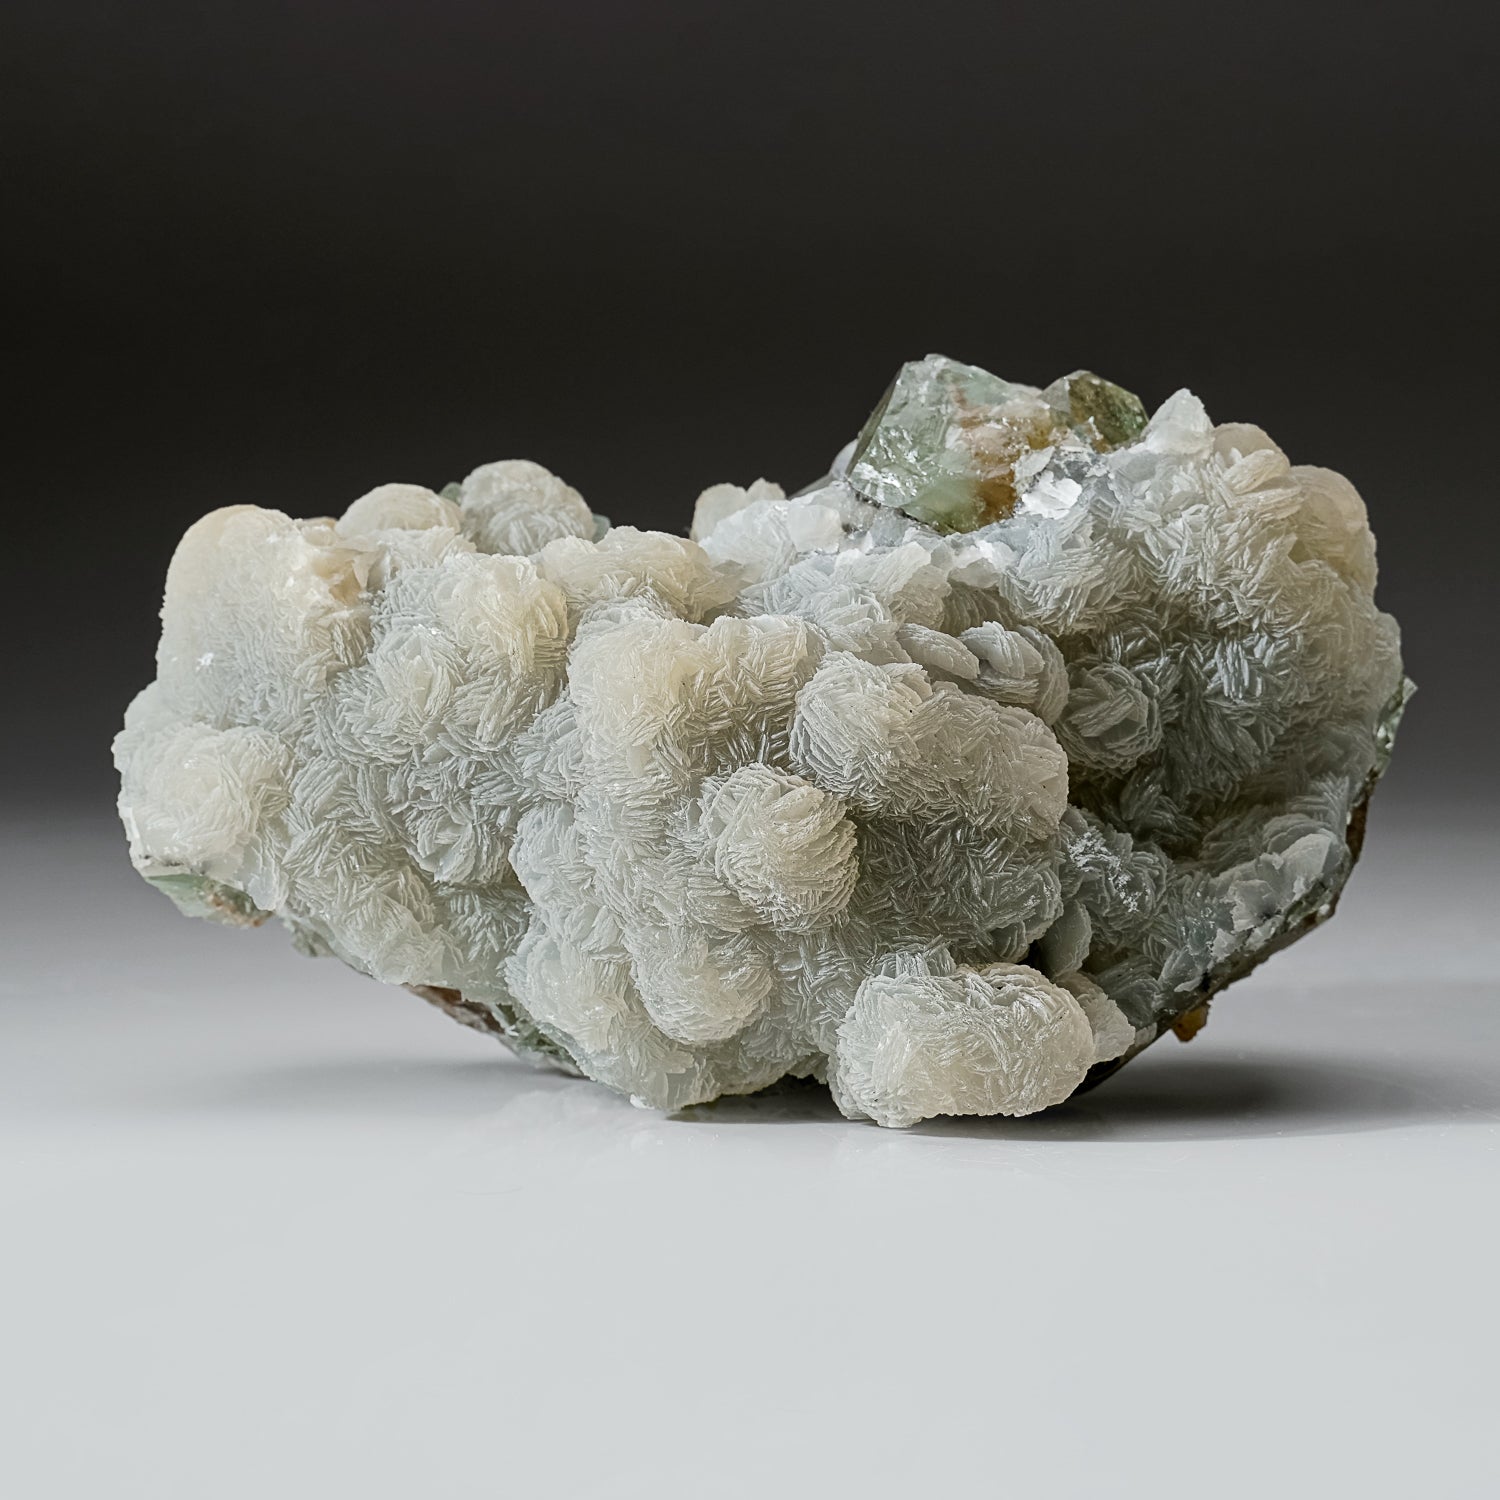 Calcite on Green Fluorite from Xianghualing-Xianghuapu Mines, Hunan, China